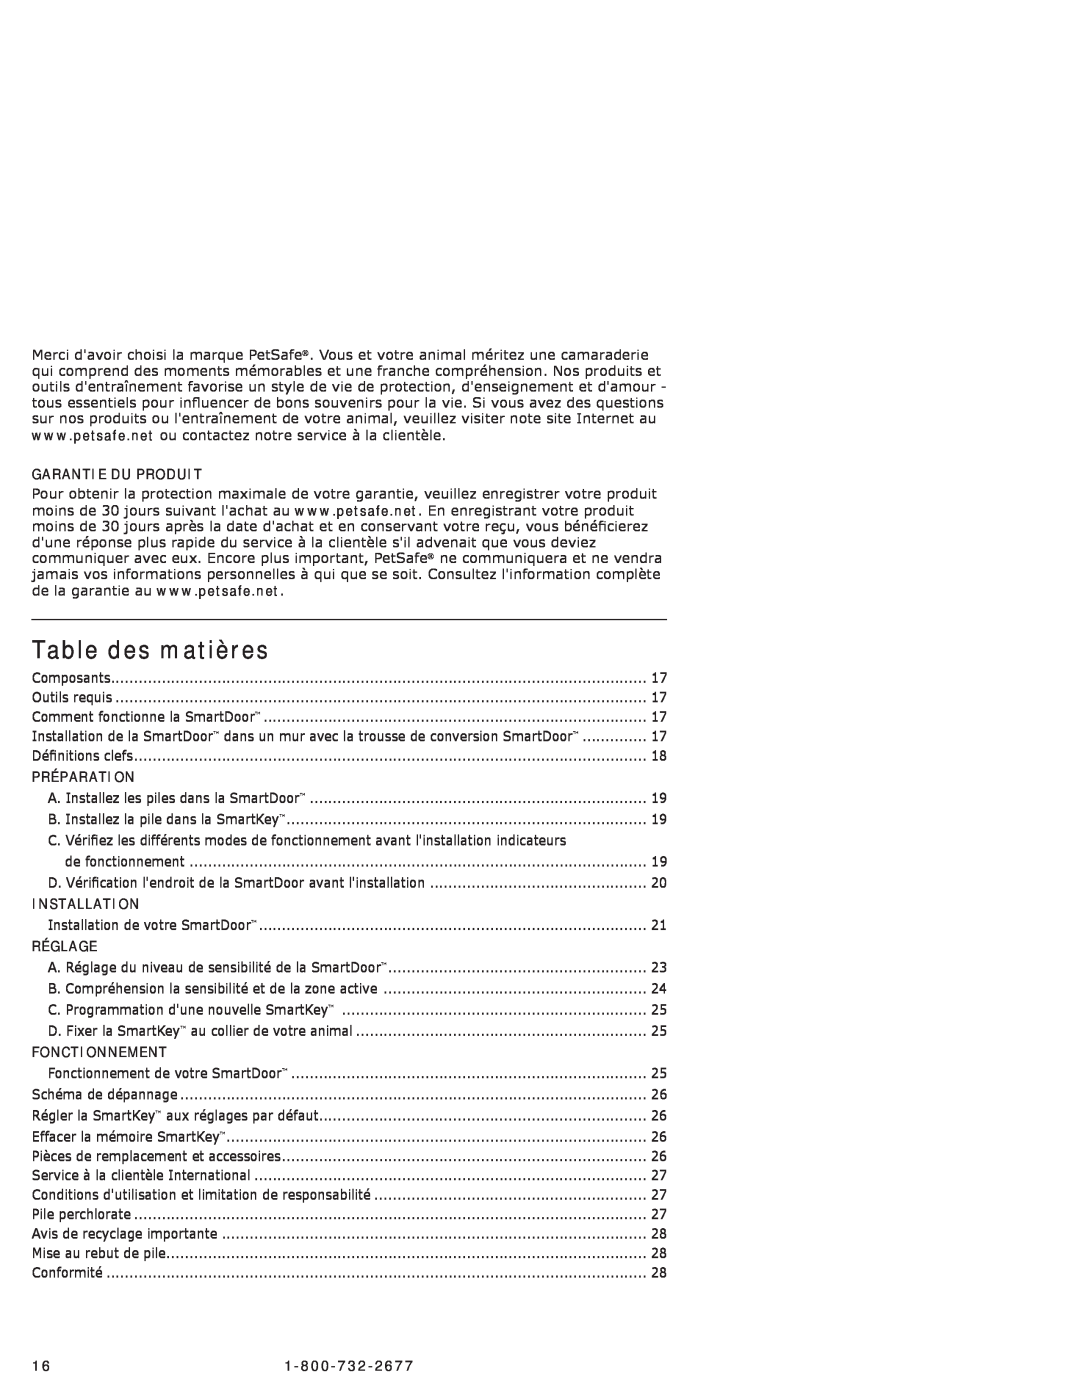 Petsafe PPA11-10711 manual Table des matières, Garantie Du Produit, Préparation, Installation, Réglage, Fonctionnement 